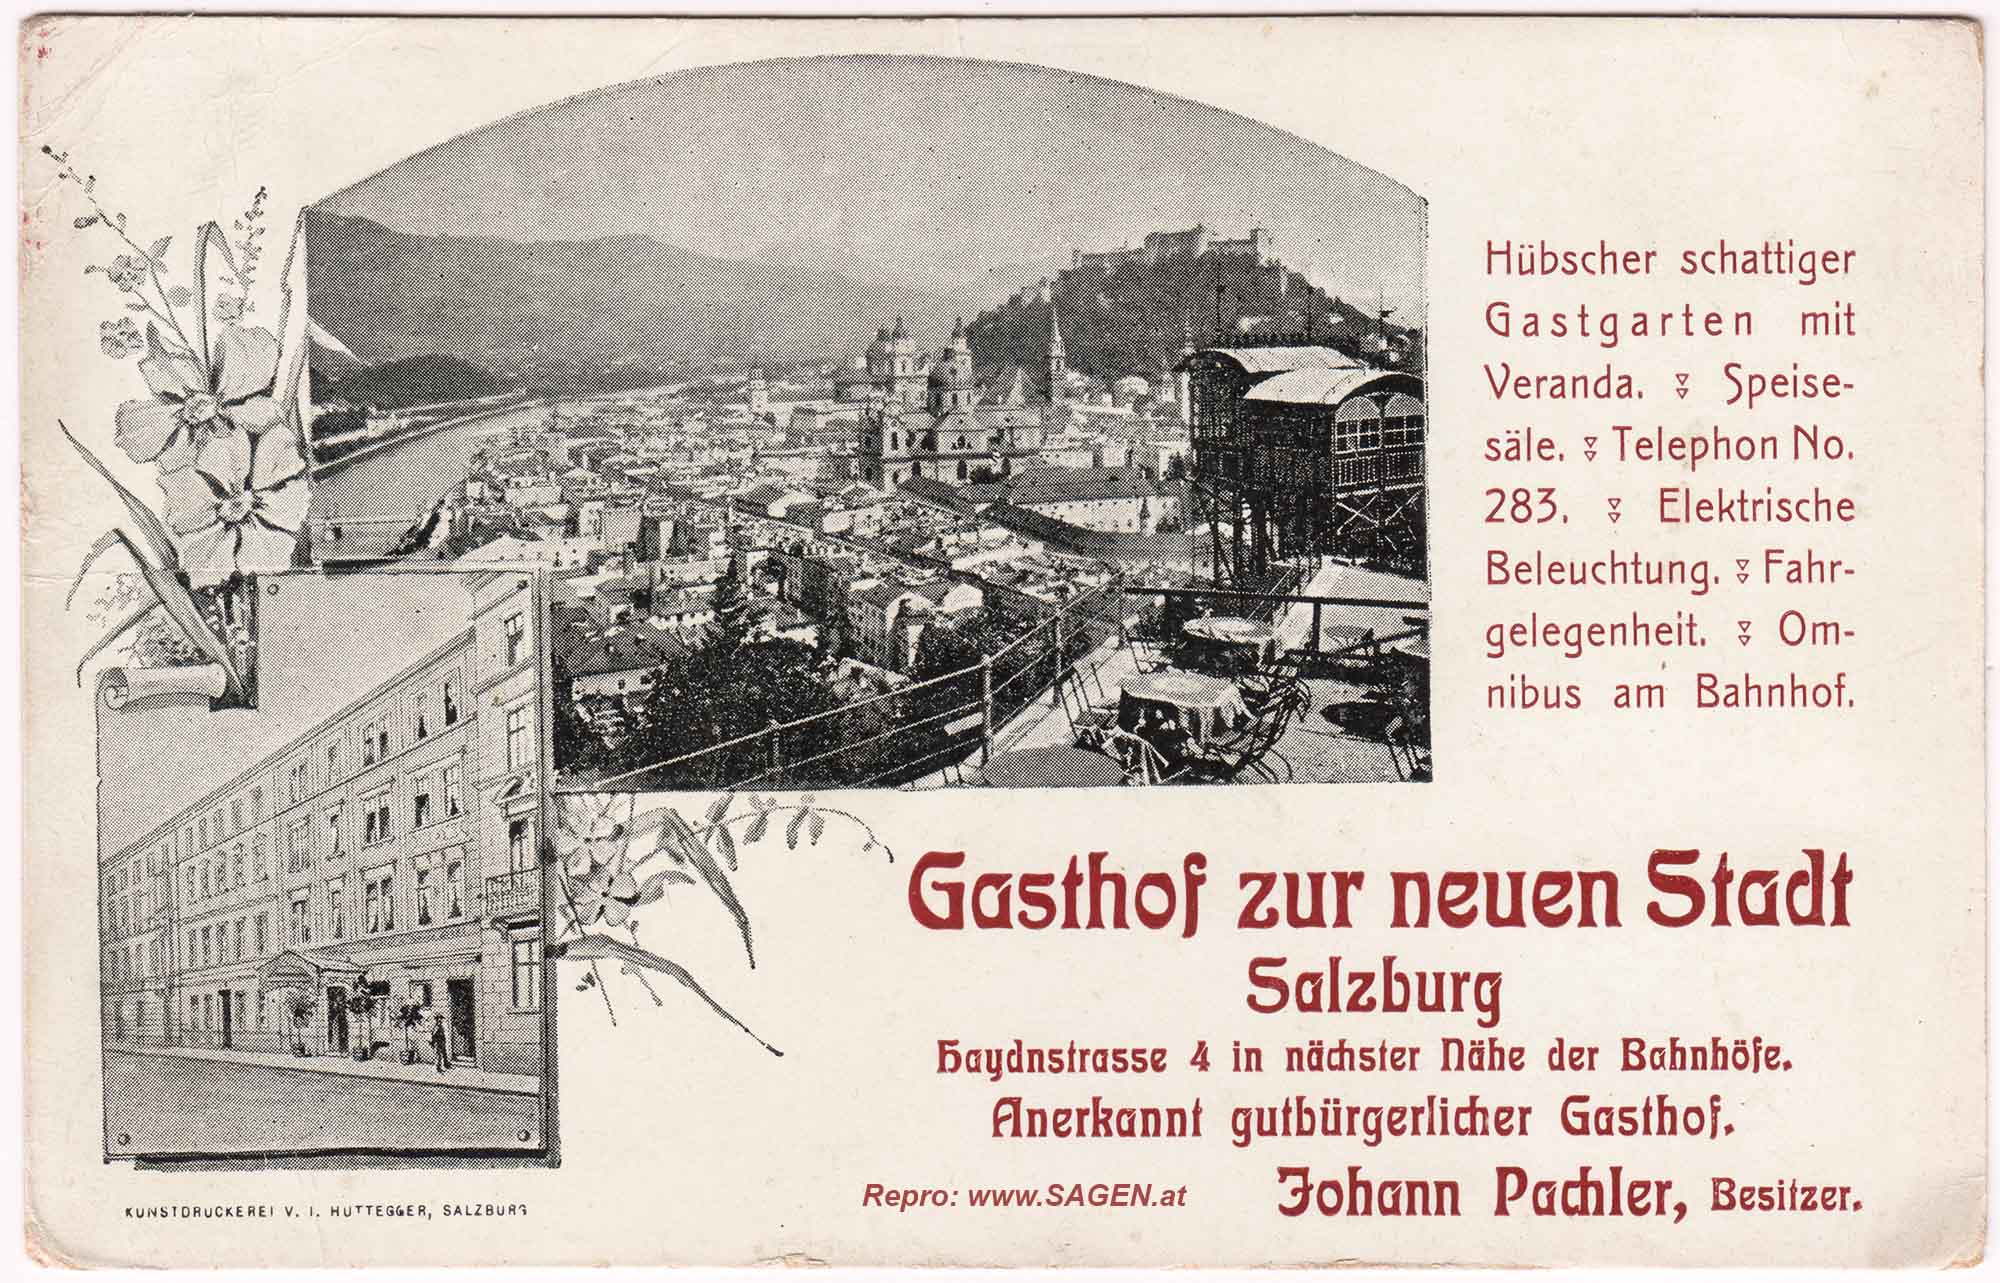 Gasthof zur neuen Stadt Salzburg